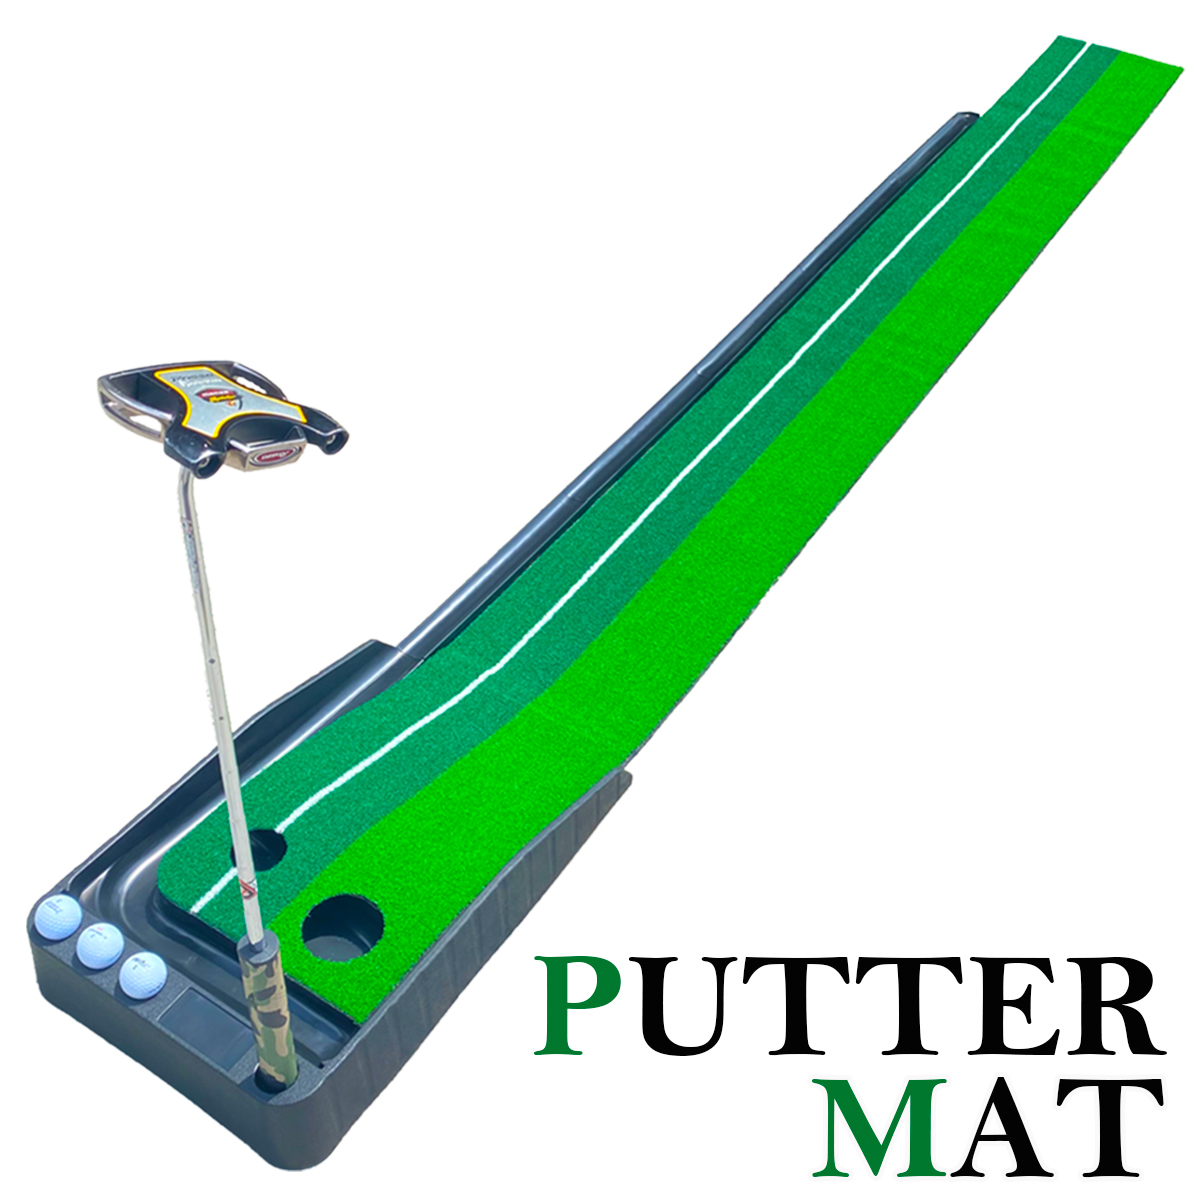 パターマット 3m パター練習器具 自動 返球機能付き アプローチ 室内 室外 練習 パッティング パター 練習用具 パター練習 ゴルフ 5の画像1